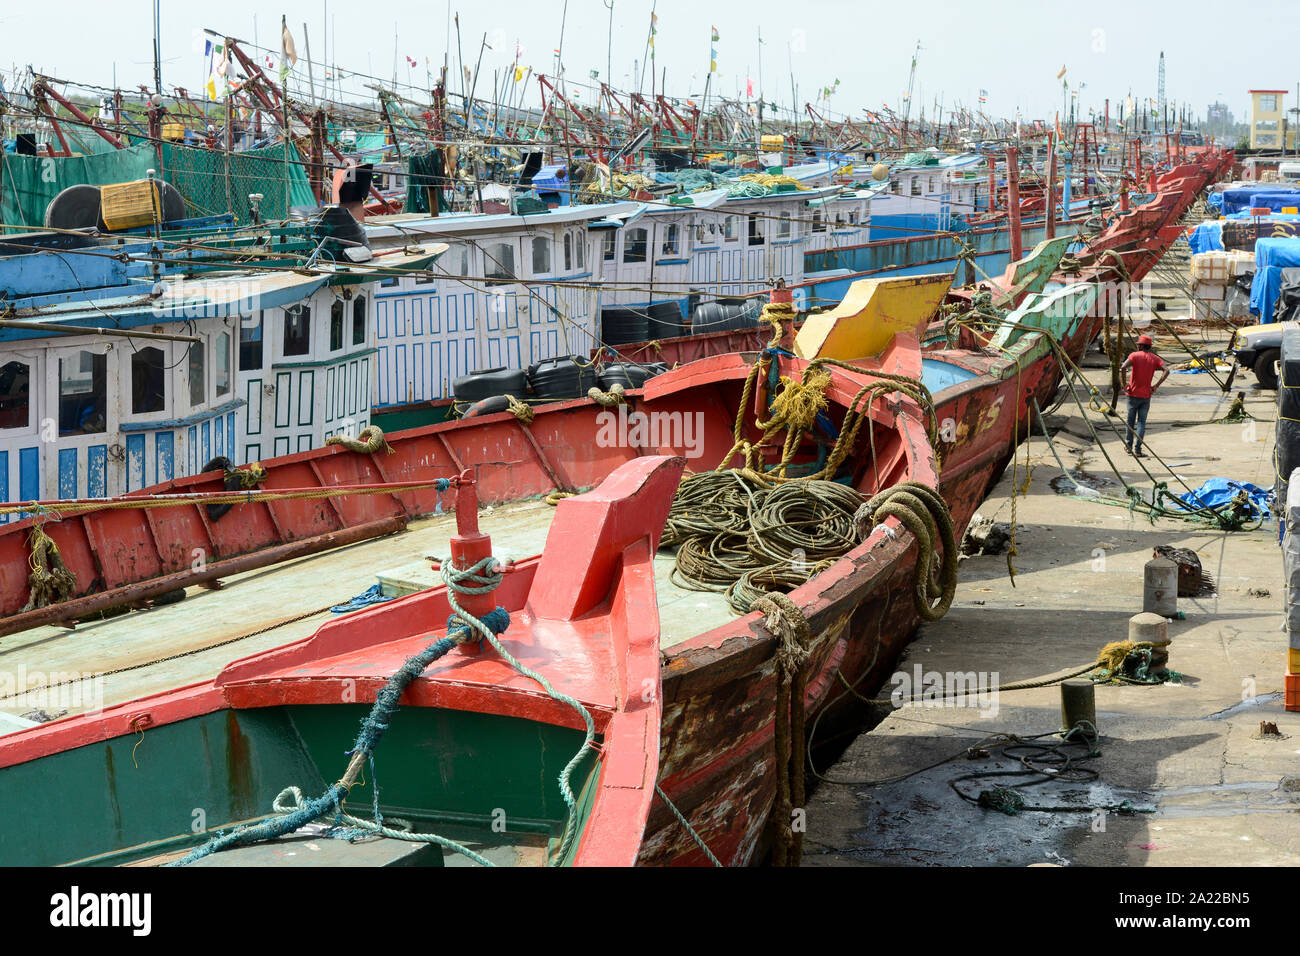 INDIA, Karnataka, Mangaluru, former name Mangalore, trawler in fishing port during monsoon Stock Photo